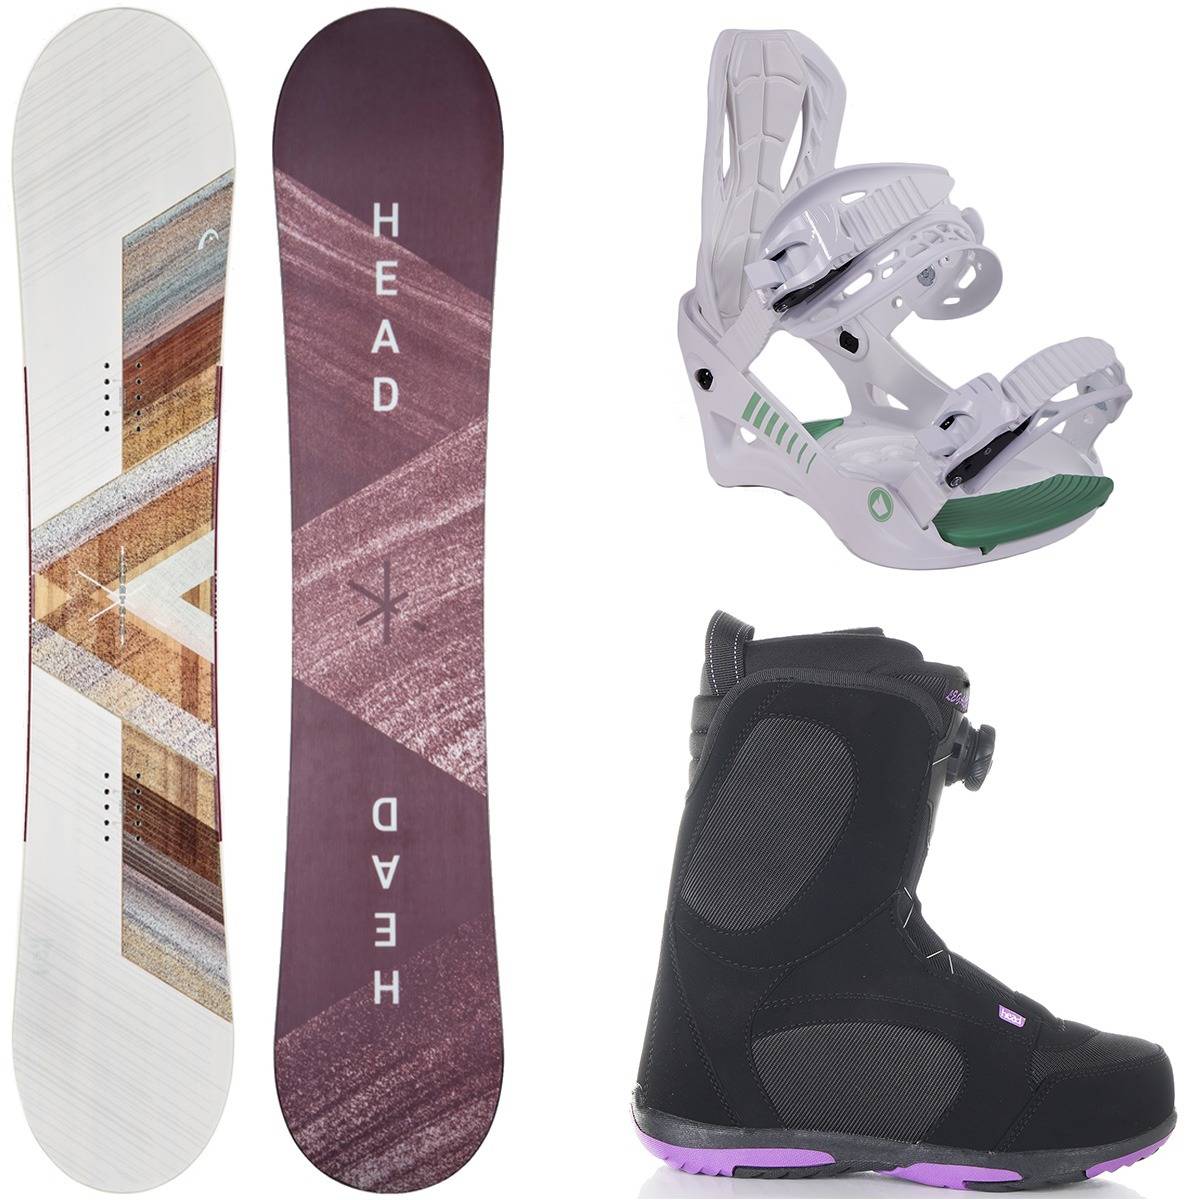 Head women's snowboard package